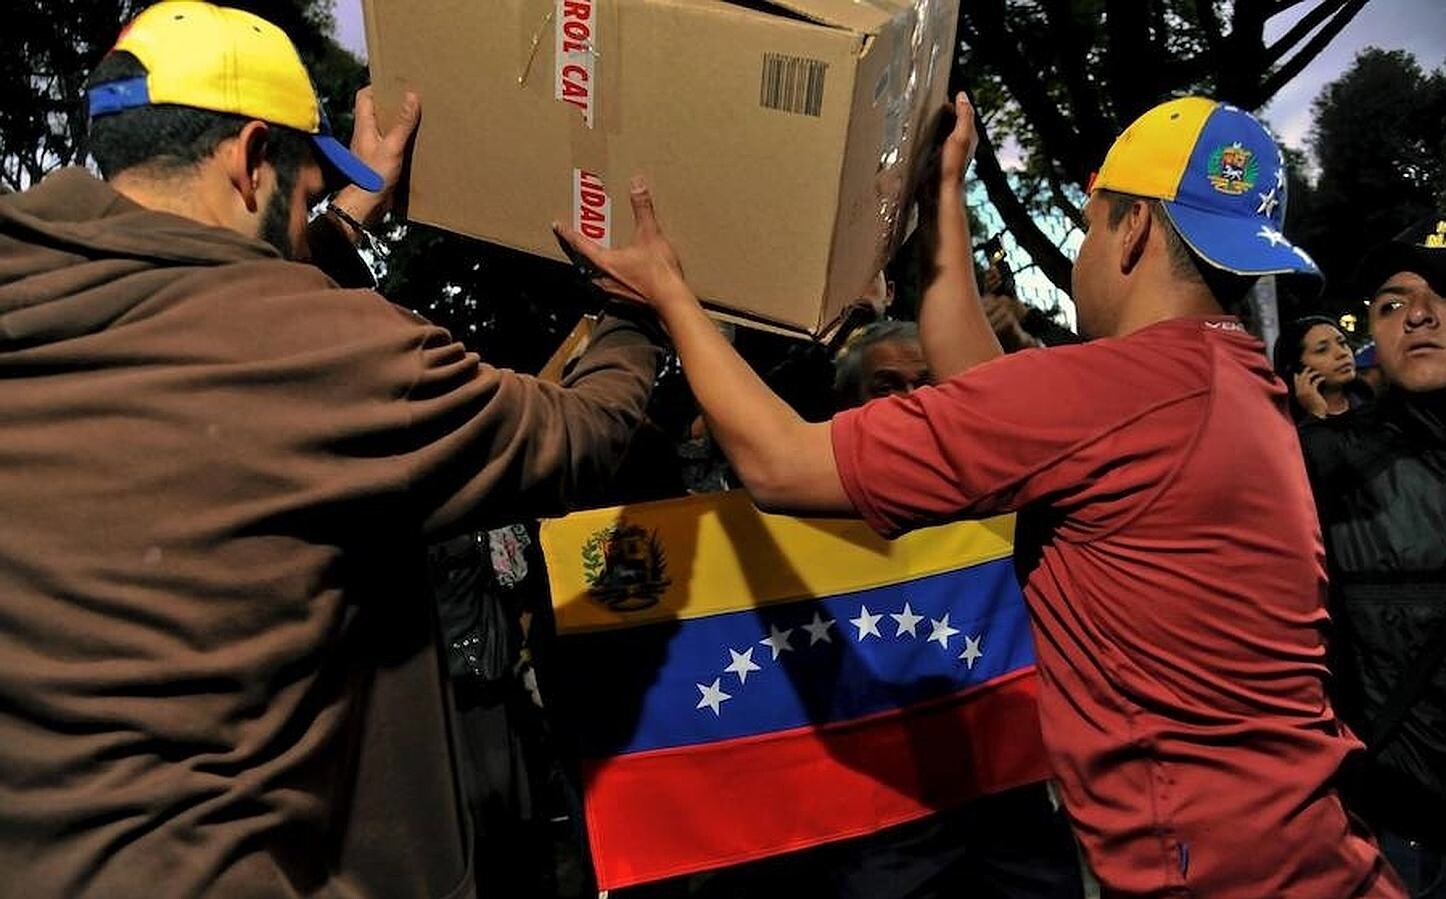 Dos hombres organizan la recogida de productos que serán destinados a la población venezolana que viven en peores condiciones. Debajo la bandera de Venezuela